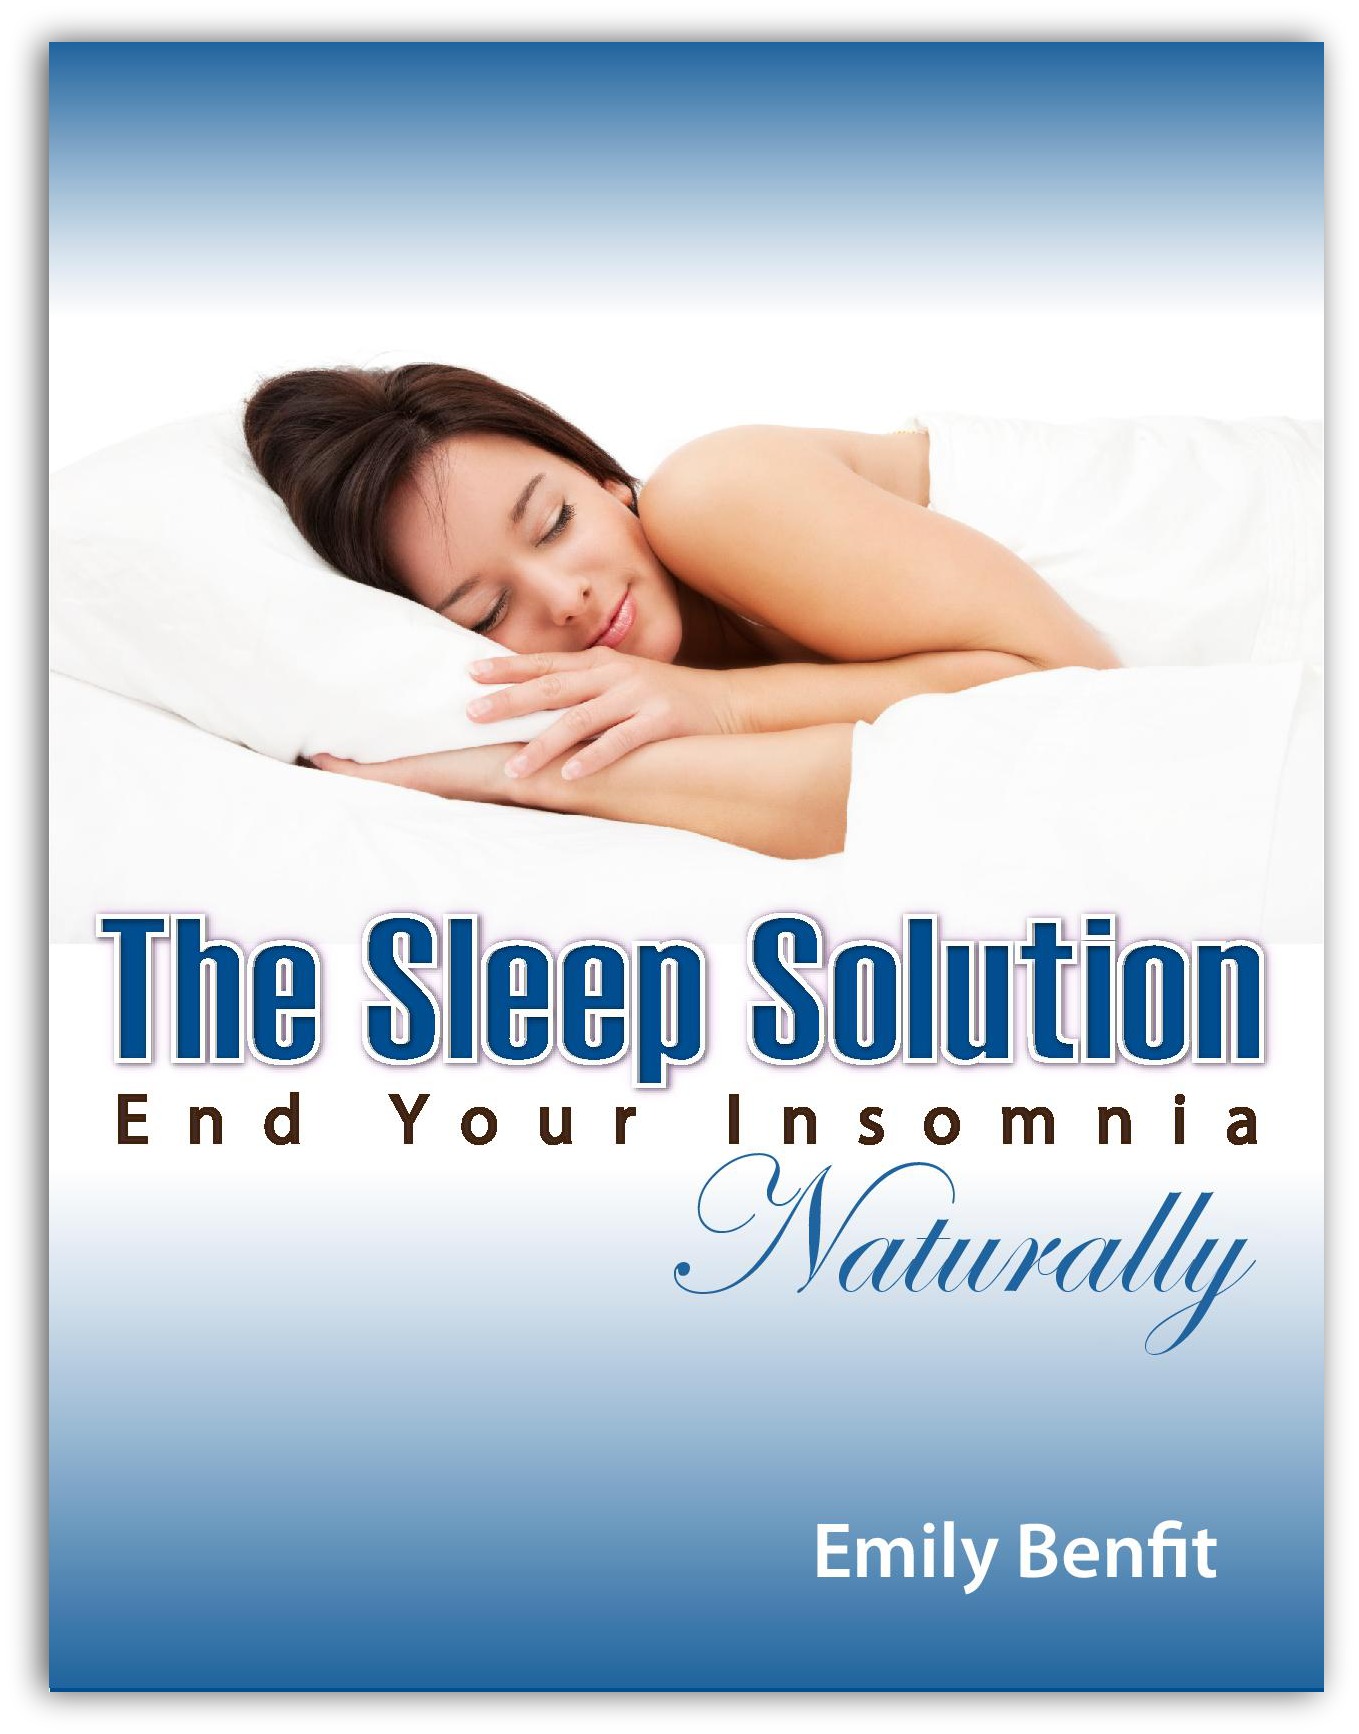 The Sleep Solution